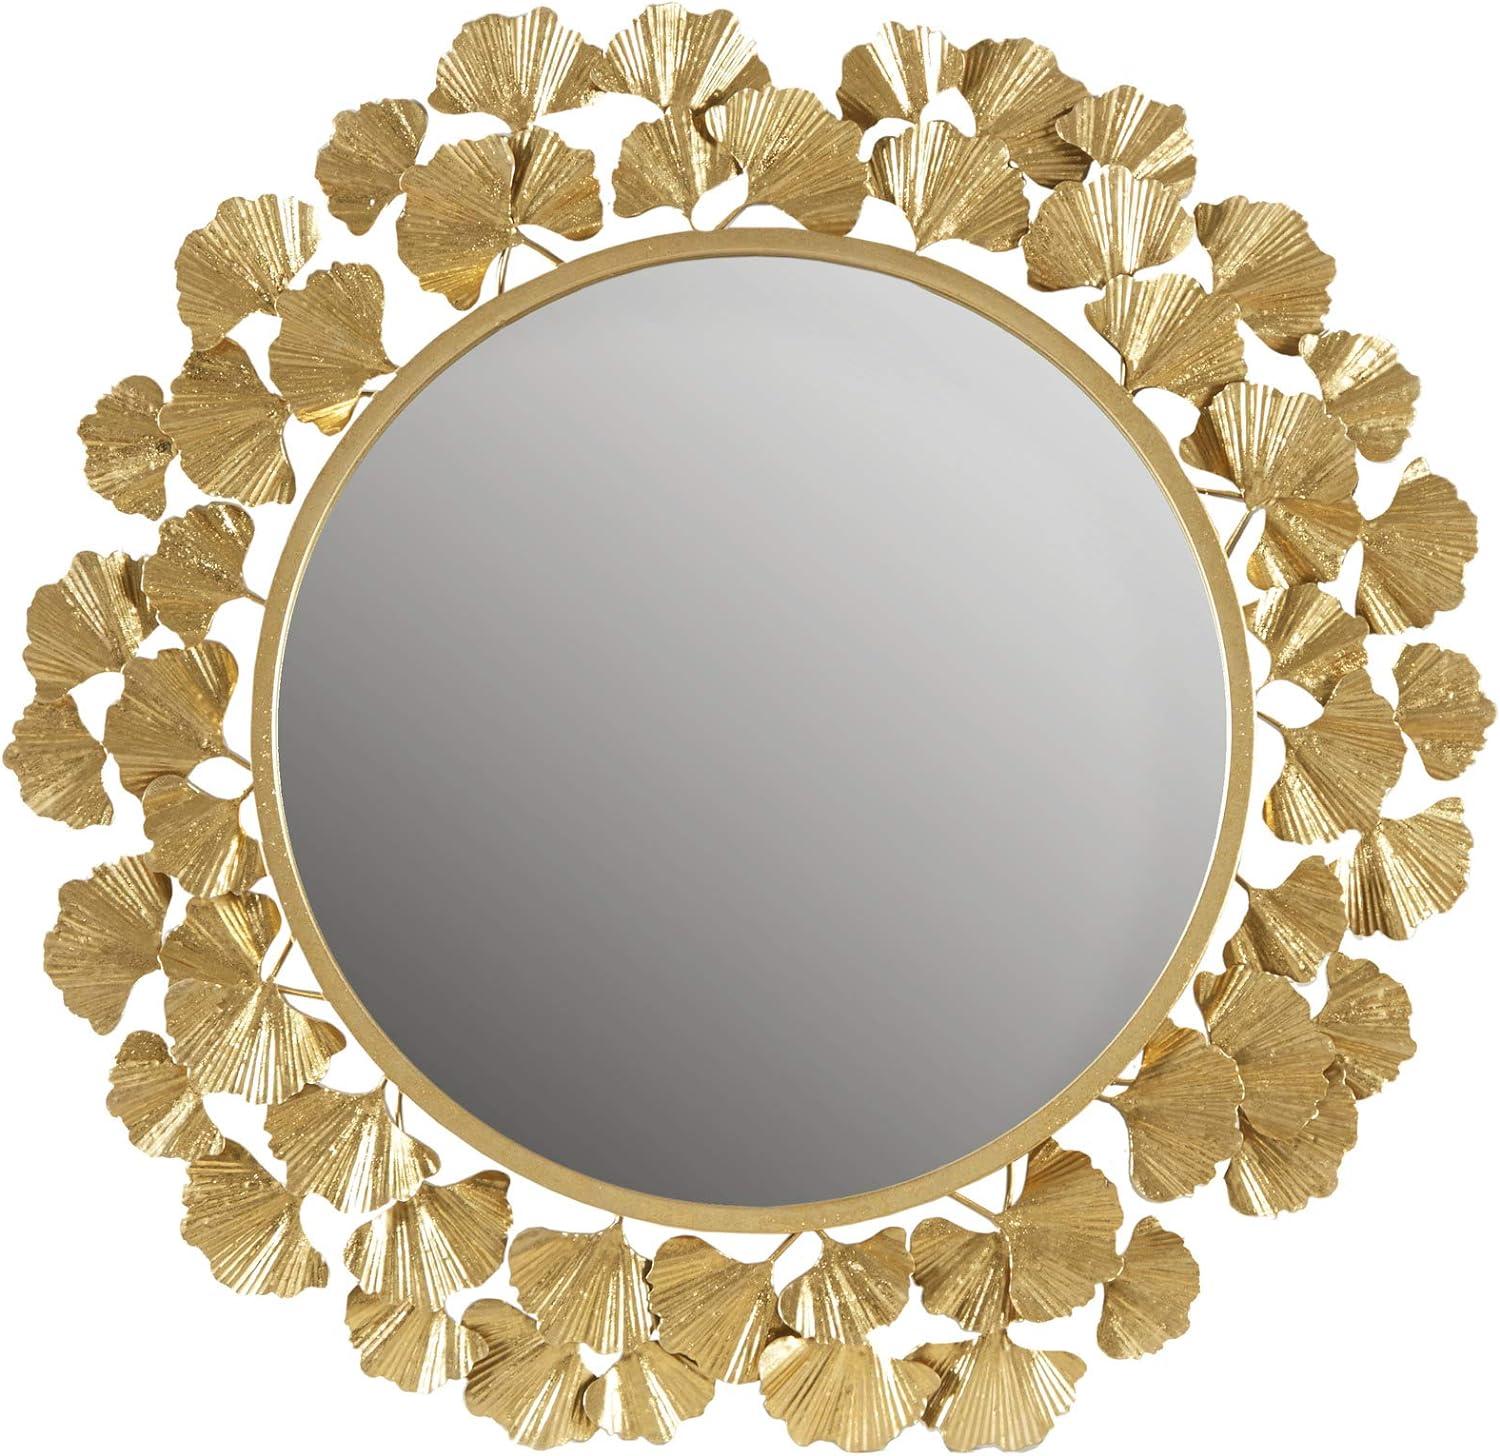 Luxurious Eden Gold Ginkgo Leaf Round Wood Wall Mirror 31"